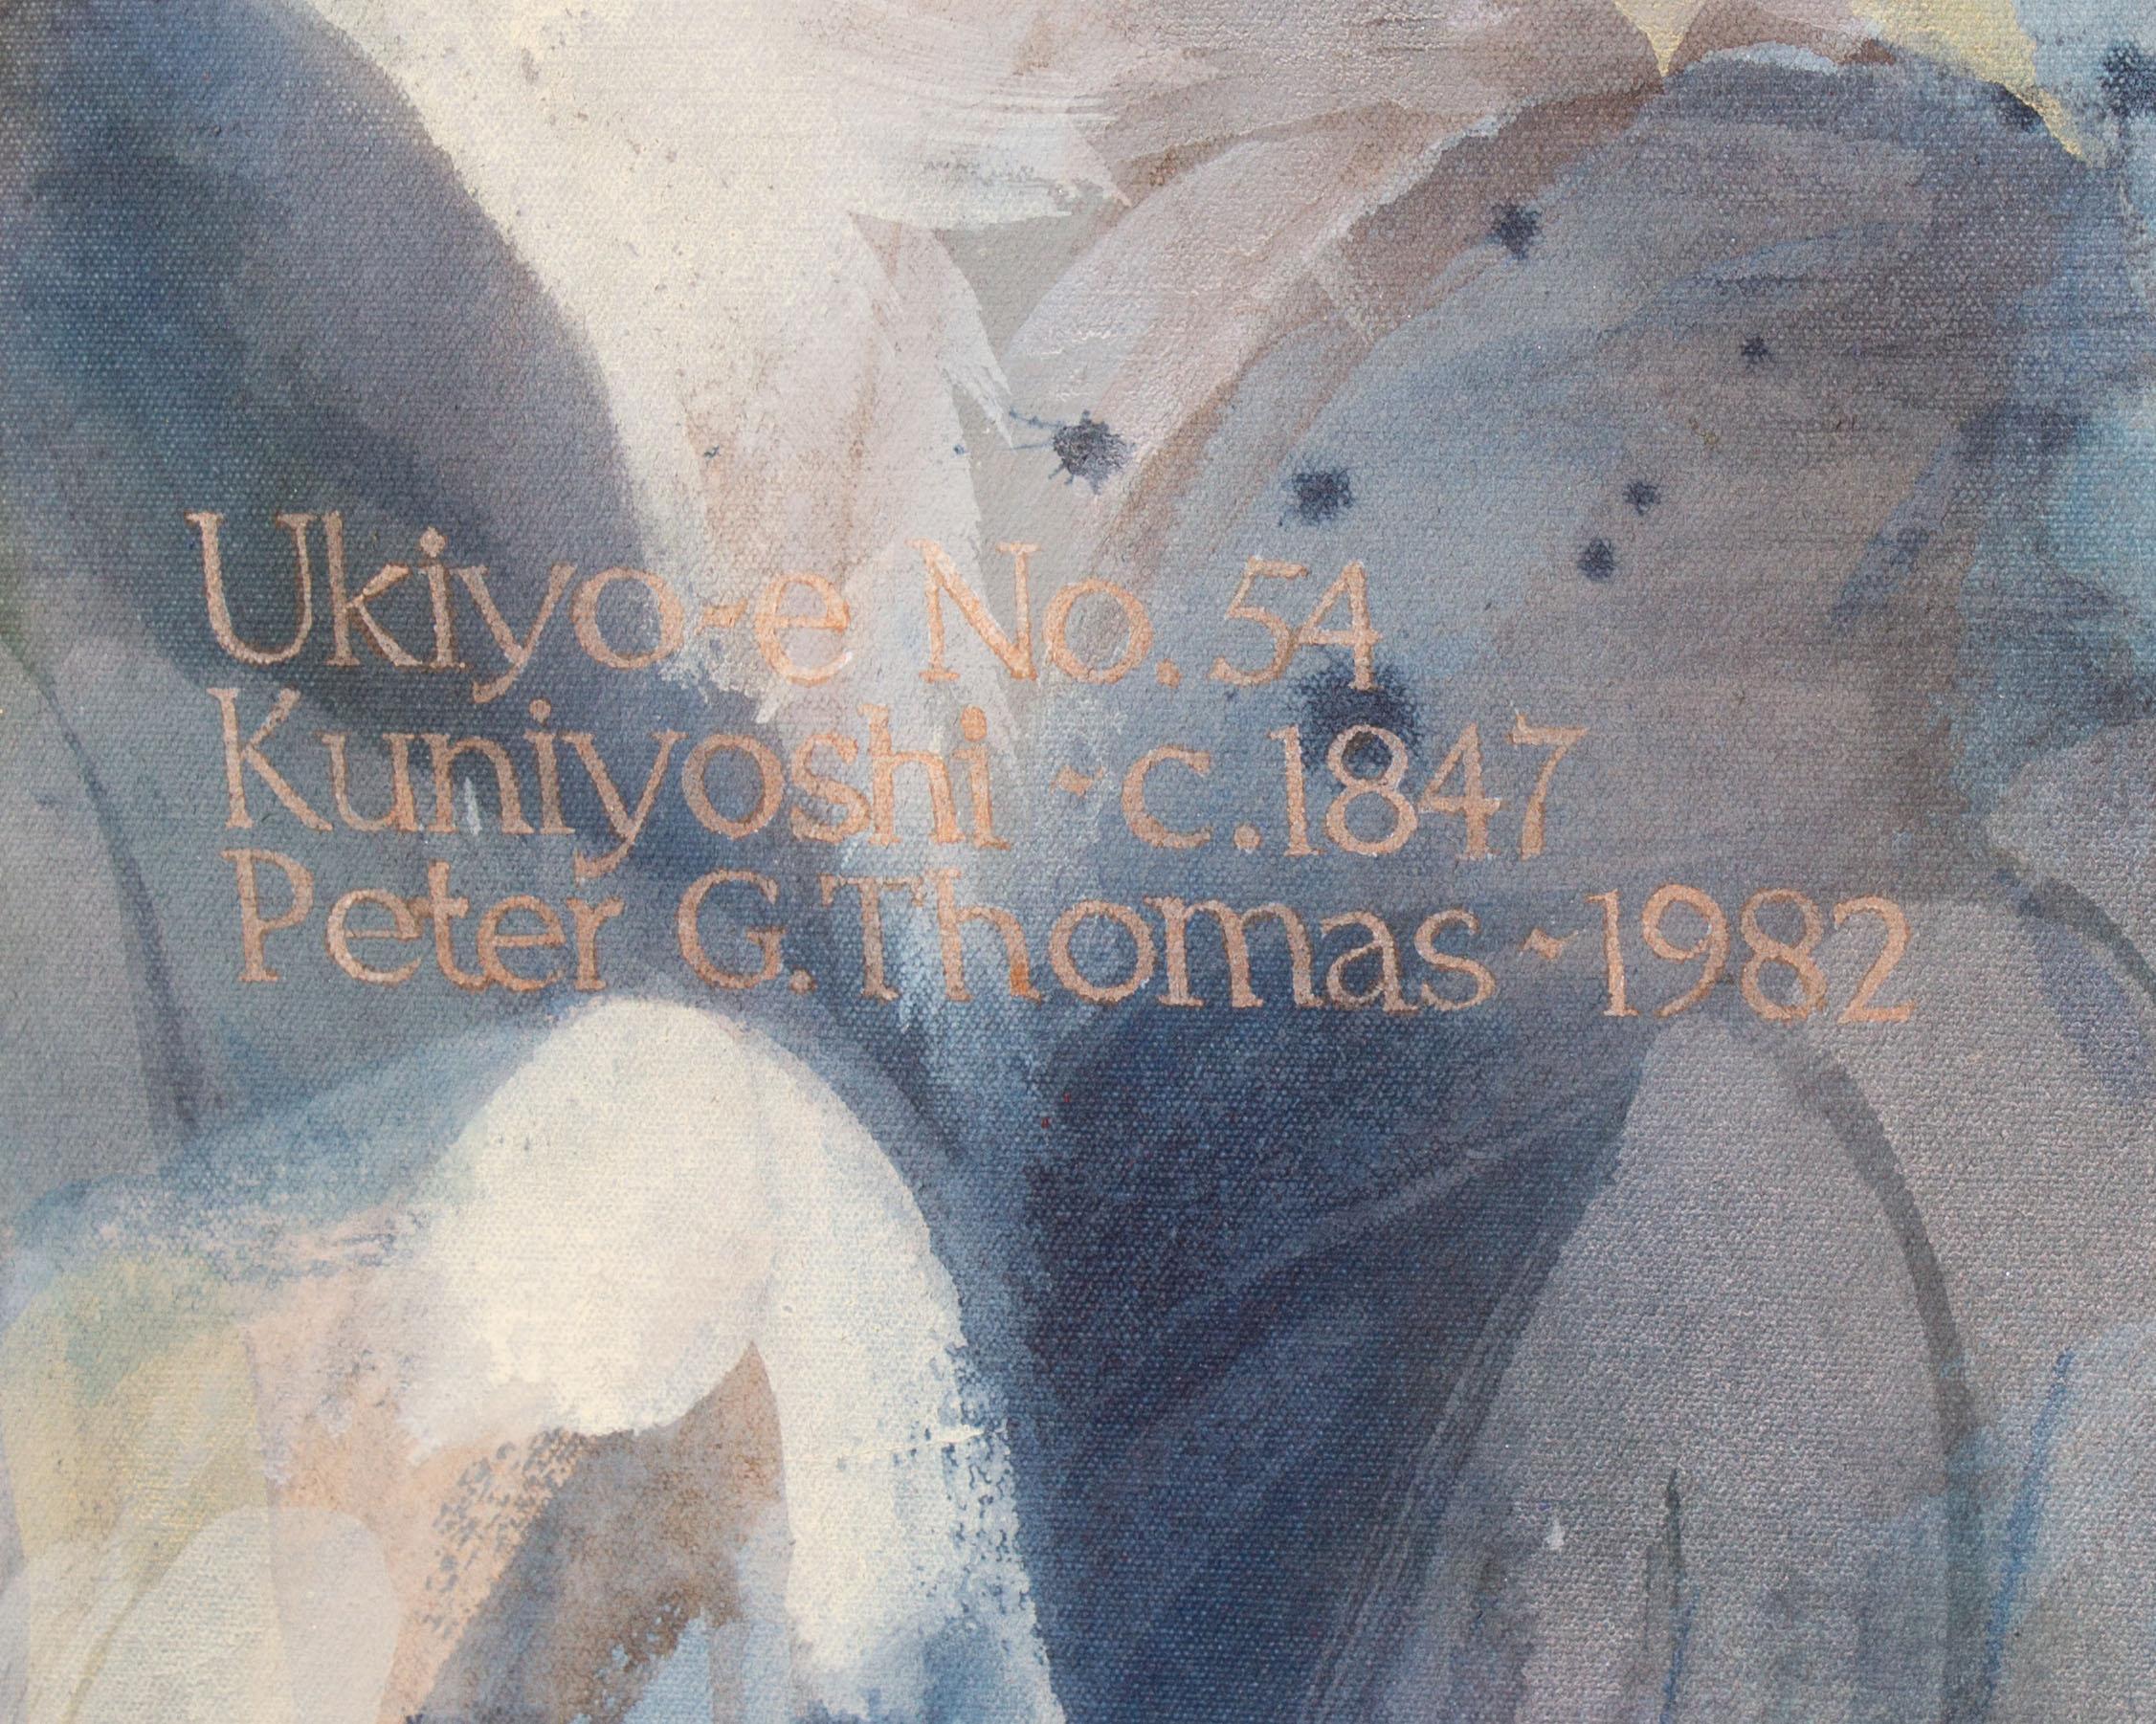 American Peter Gethin Thomas Signed 1982 “Ukiyo-e No. 53 Kuniyoshi C. 1847” Oil Painting